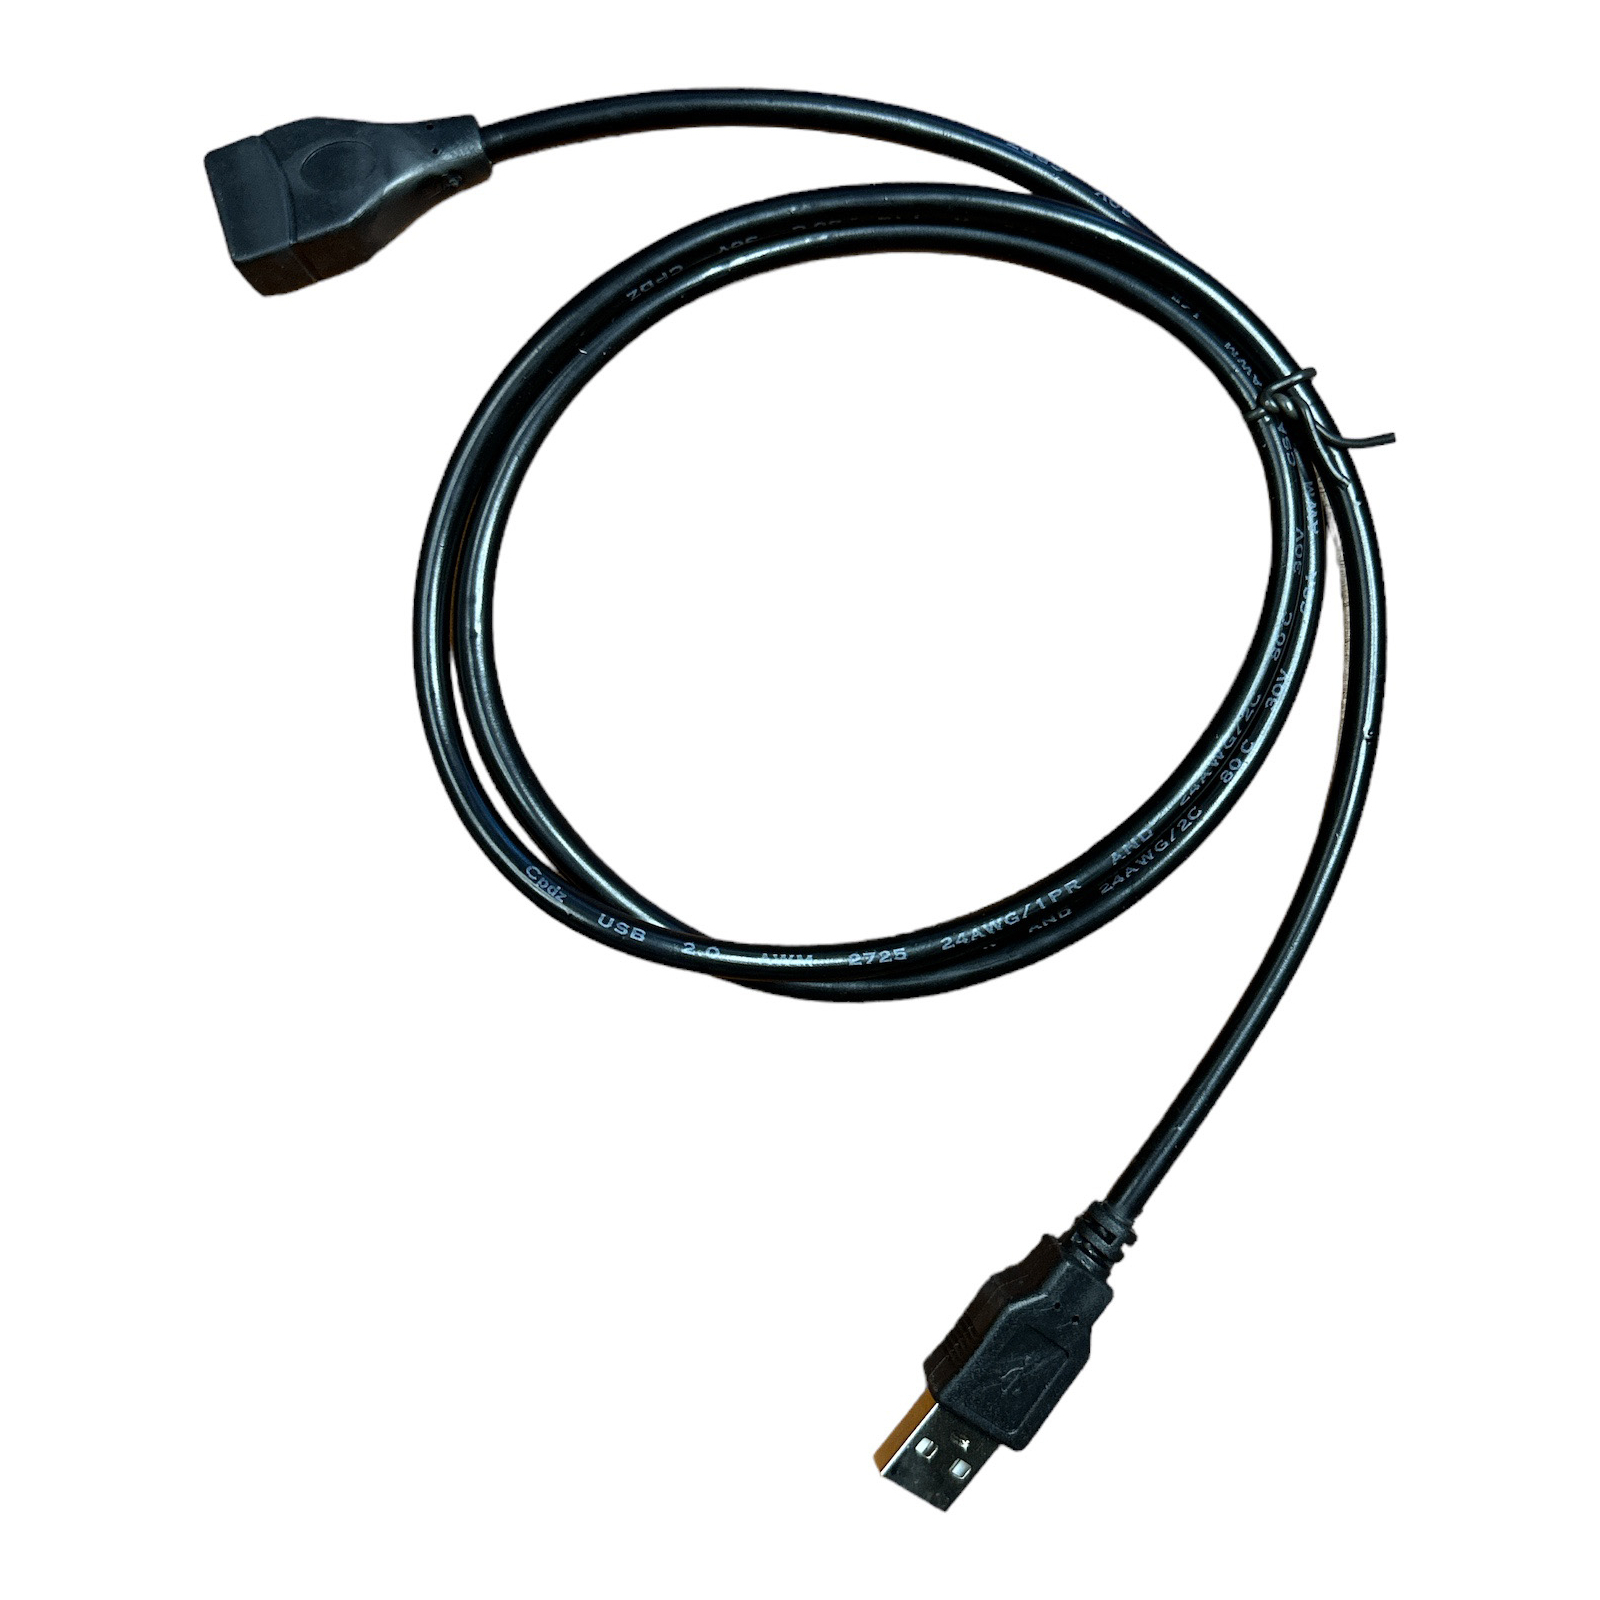 Дата кабель PC-100 USB 2.0 AM USB 2.0 AF XoKo (XK-PC-100)